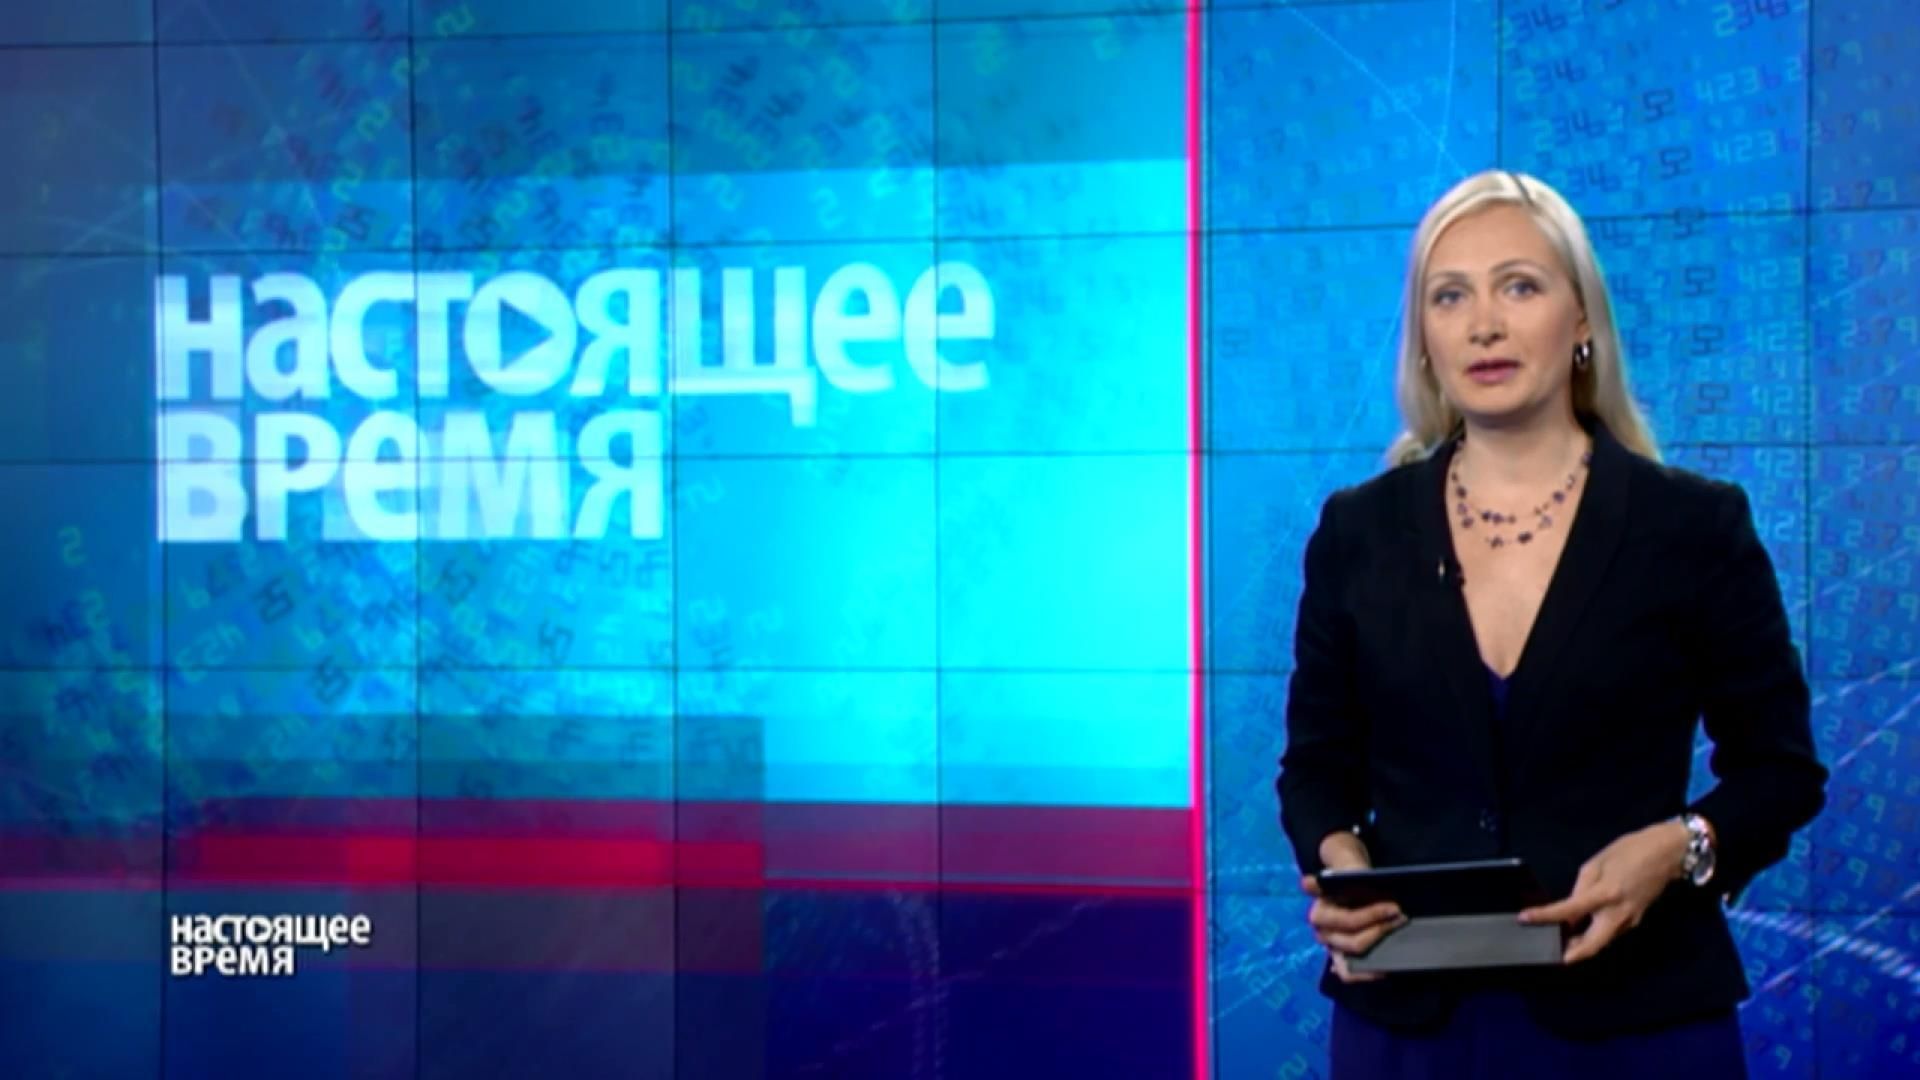 "Настоящее время". Украина опасна для репортеров, дочь Немцова сбежала из России